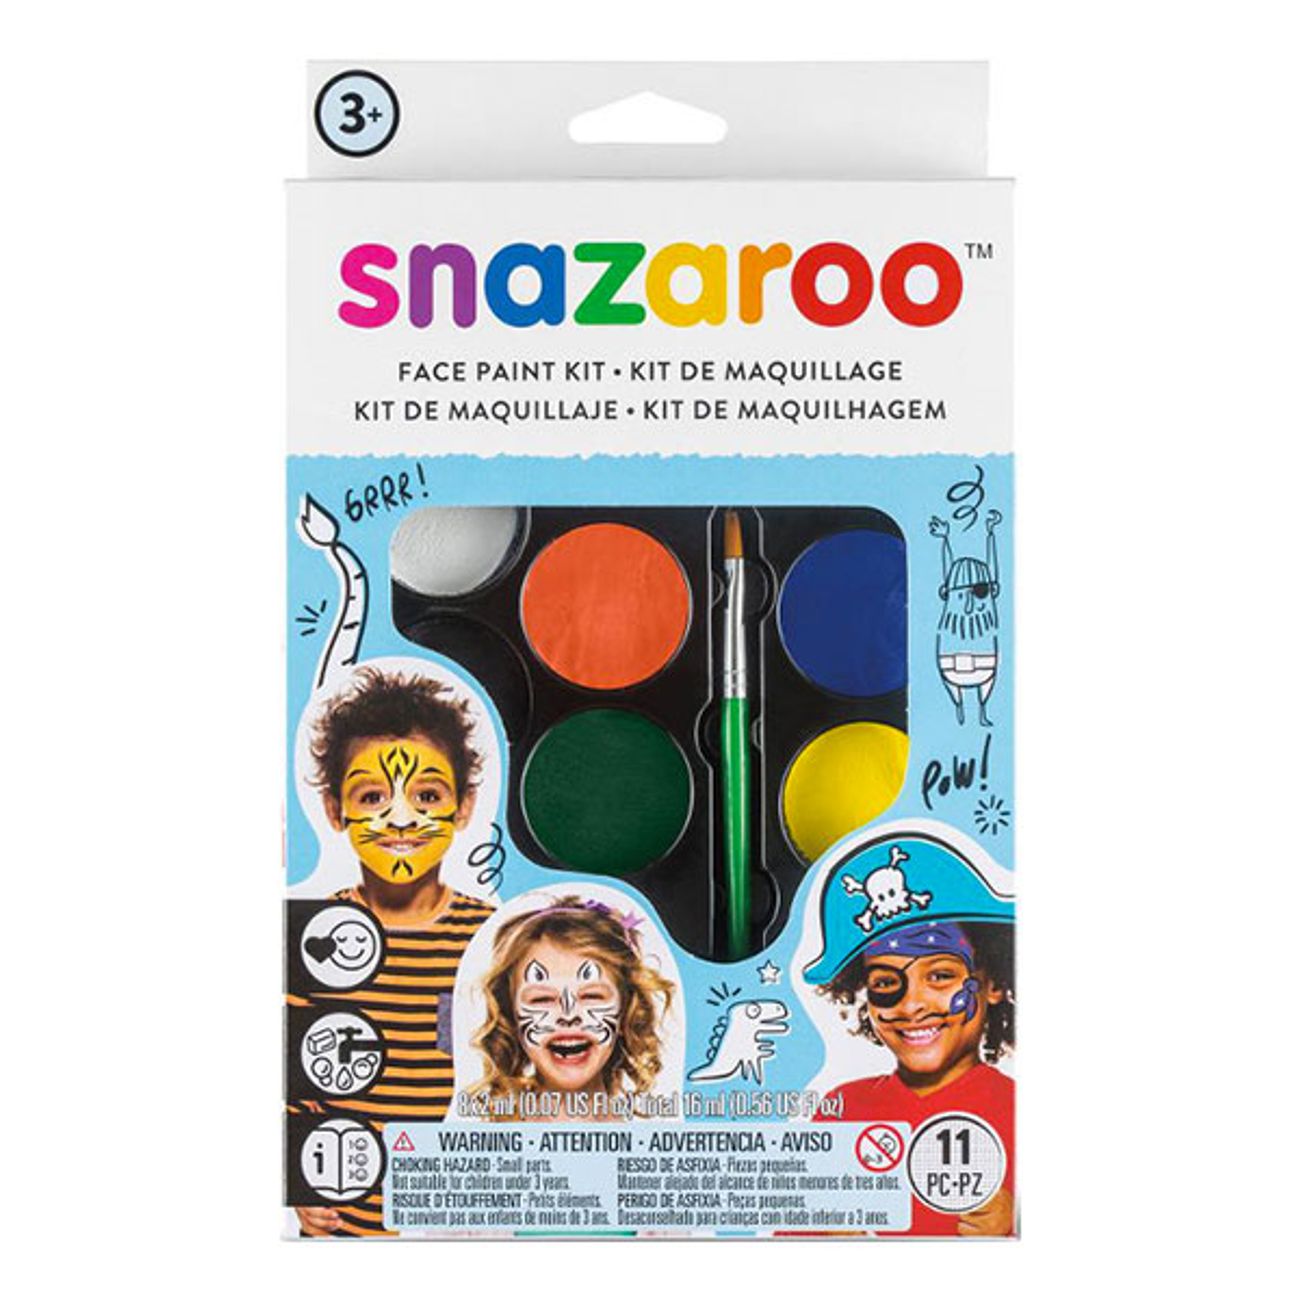 snazaroo-ansiktsfargsset-boy-nordic-1